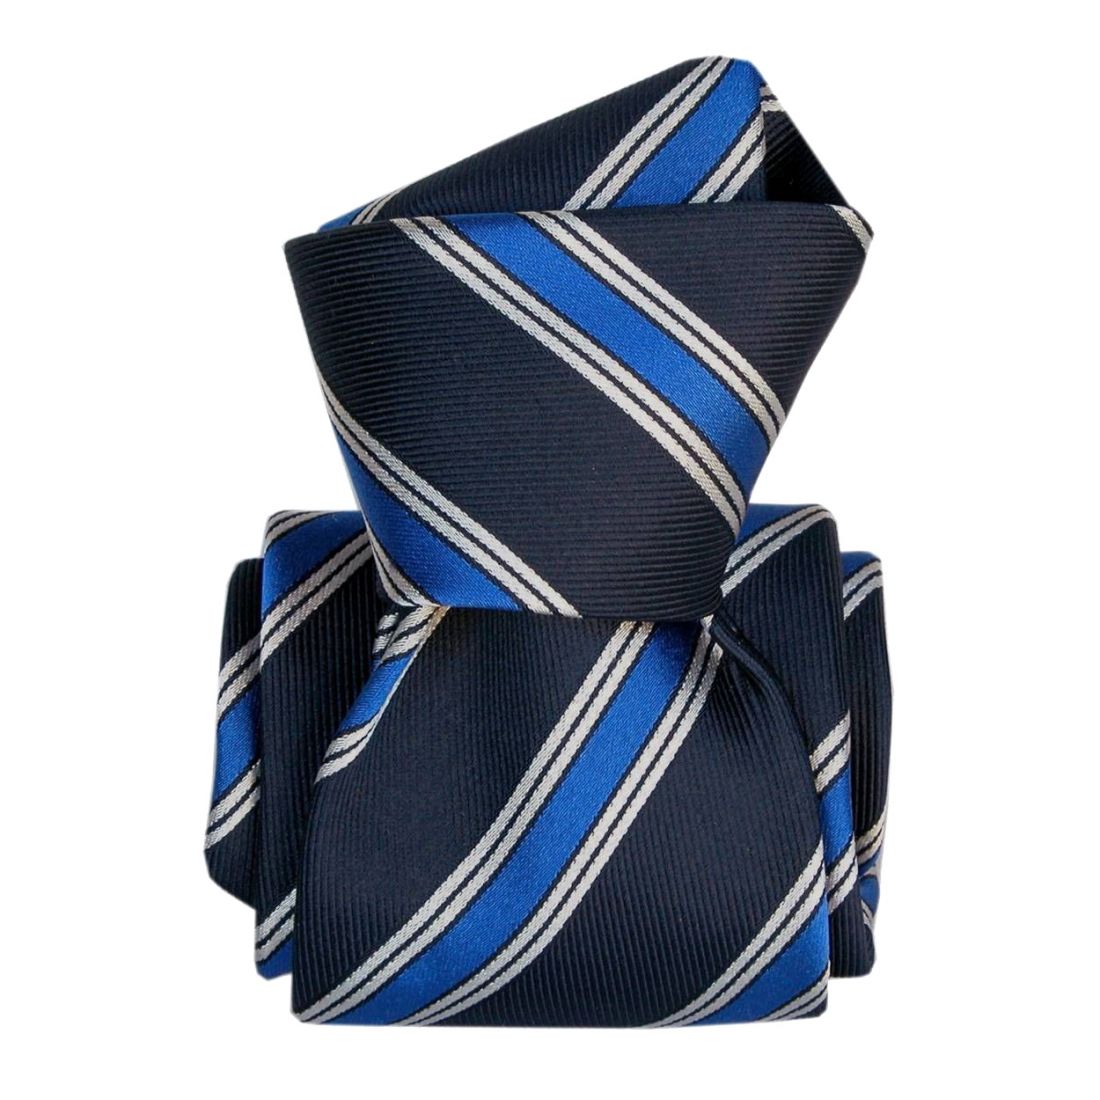 Cravate artisanale Segni et Disegni Confection main Bleu Soie Club